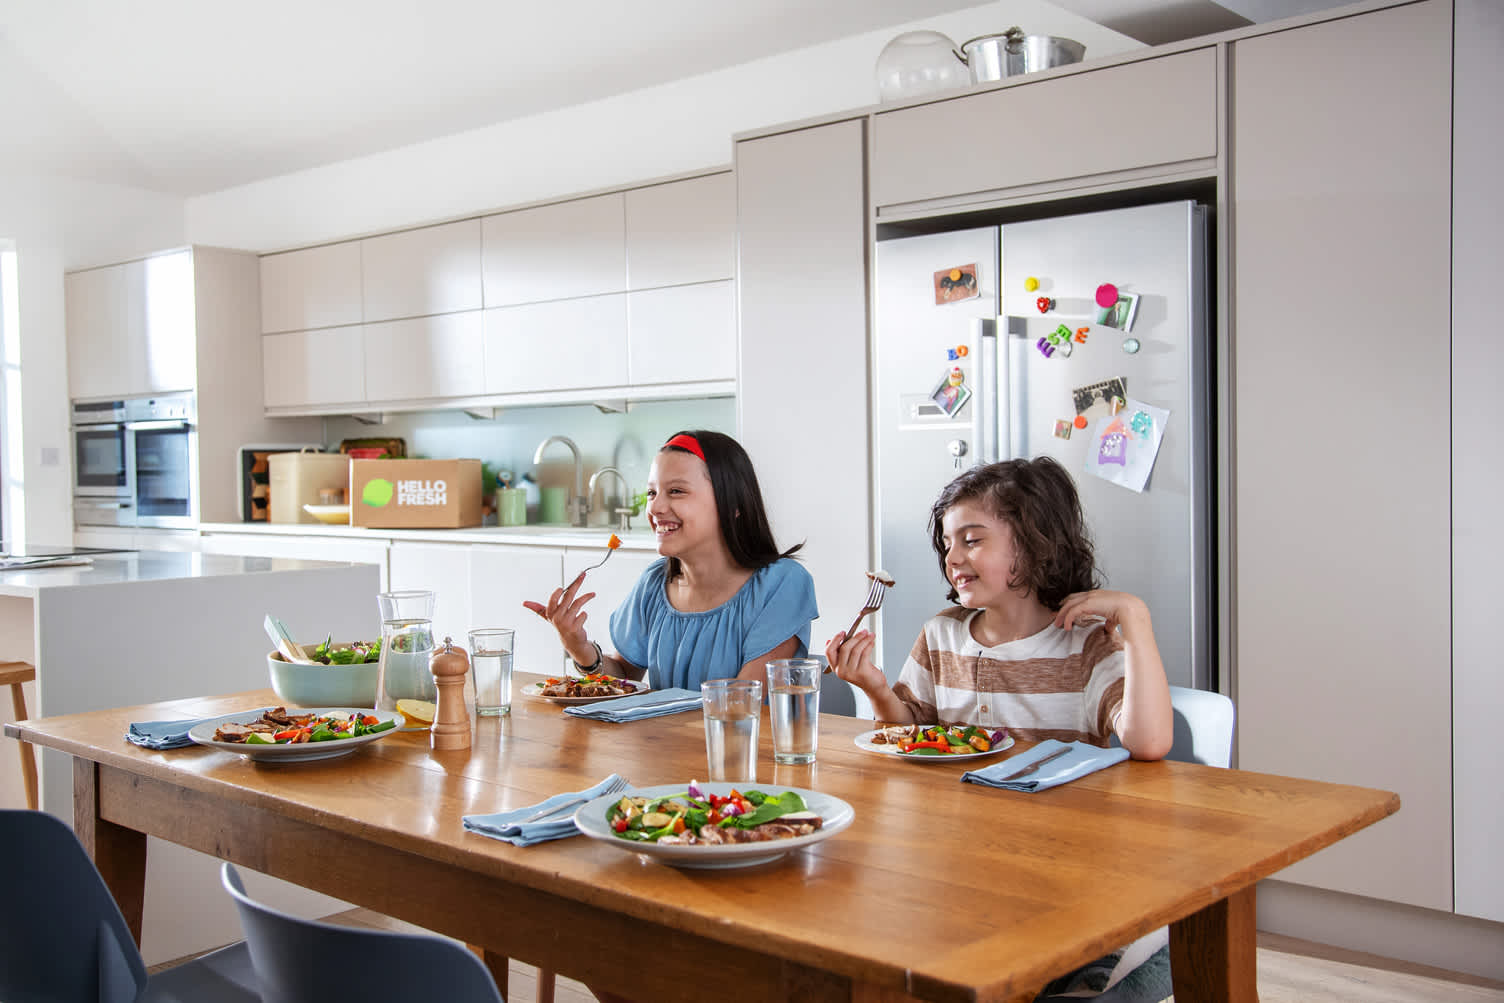 Volgens 84% van de Belgen draagt samen aan tafel bij tot quality time met het gezin